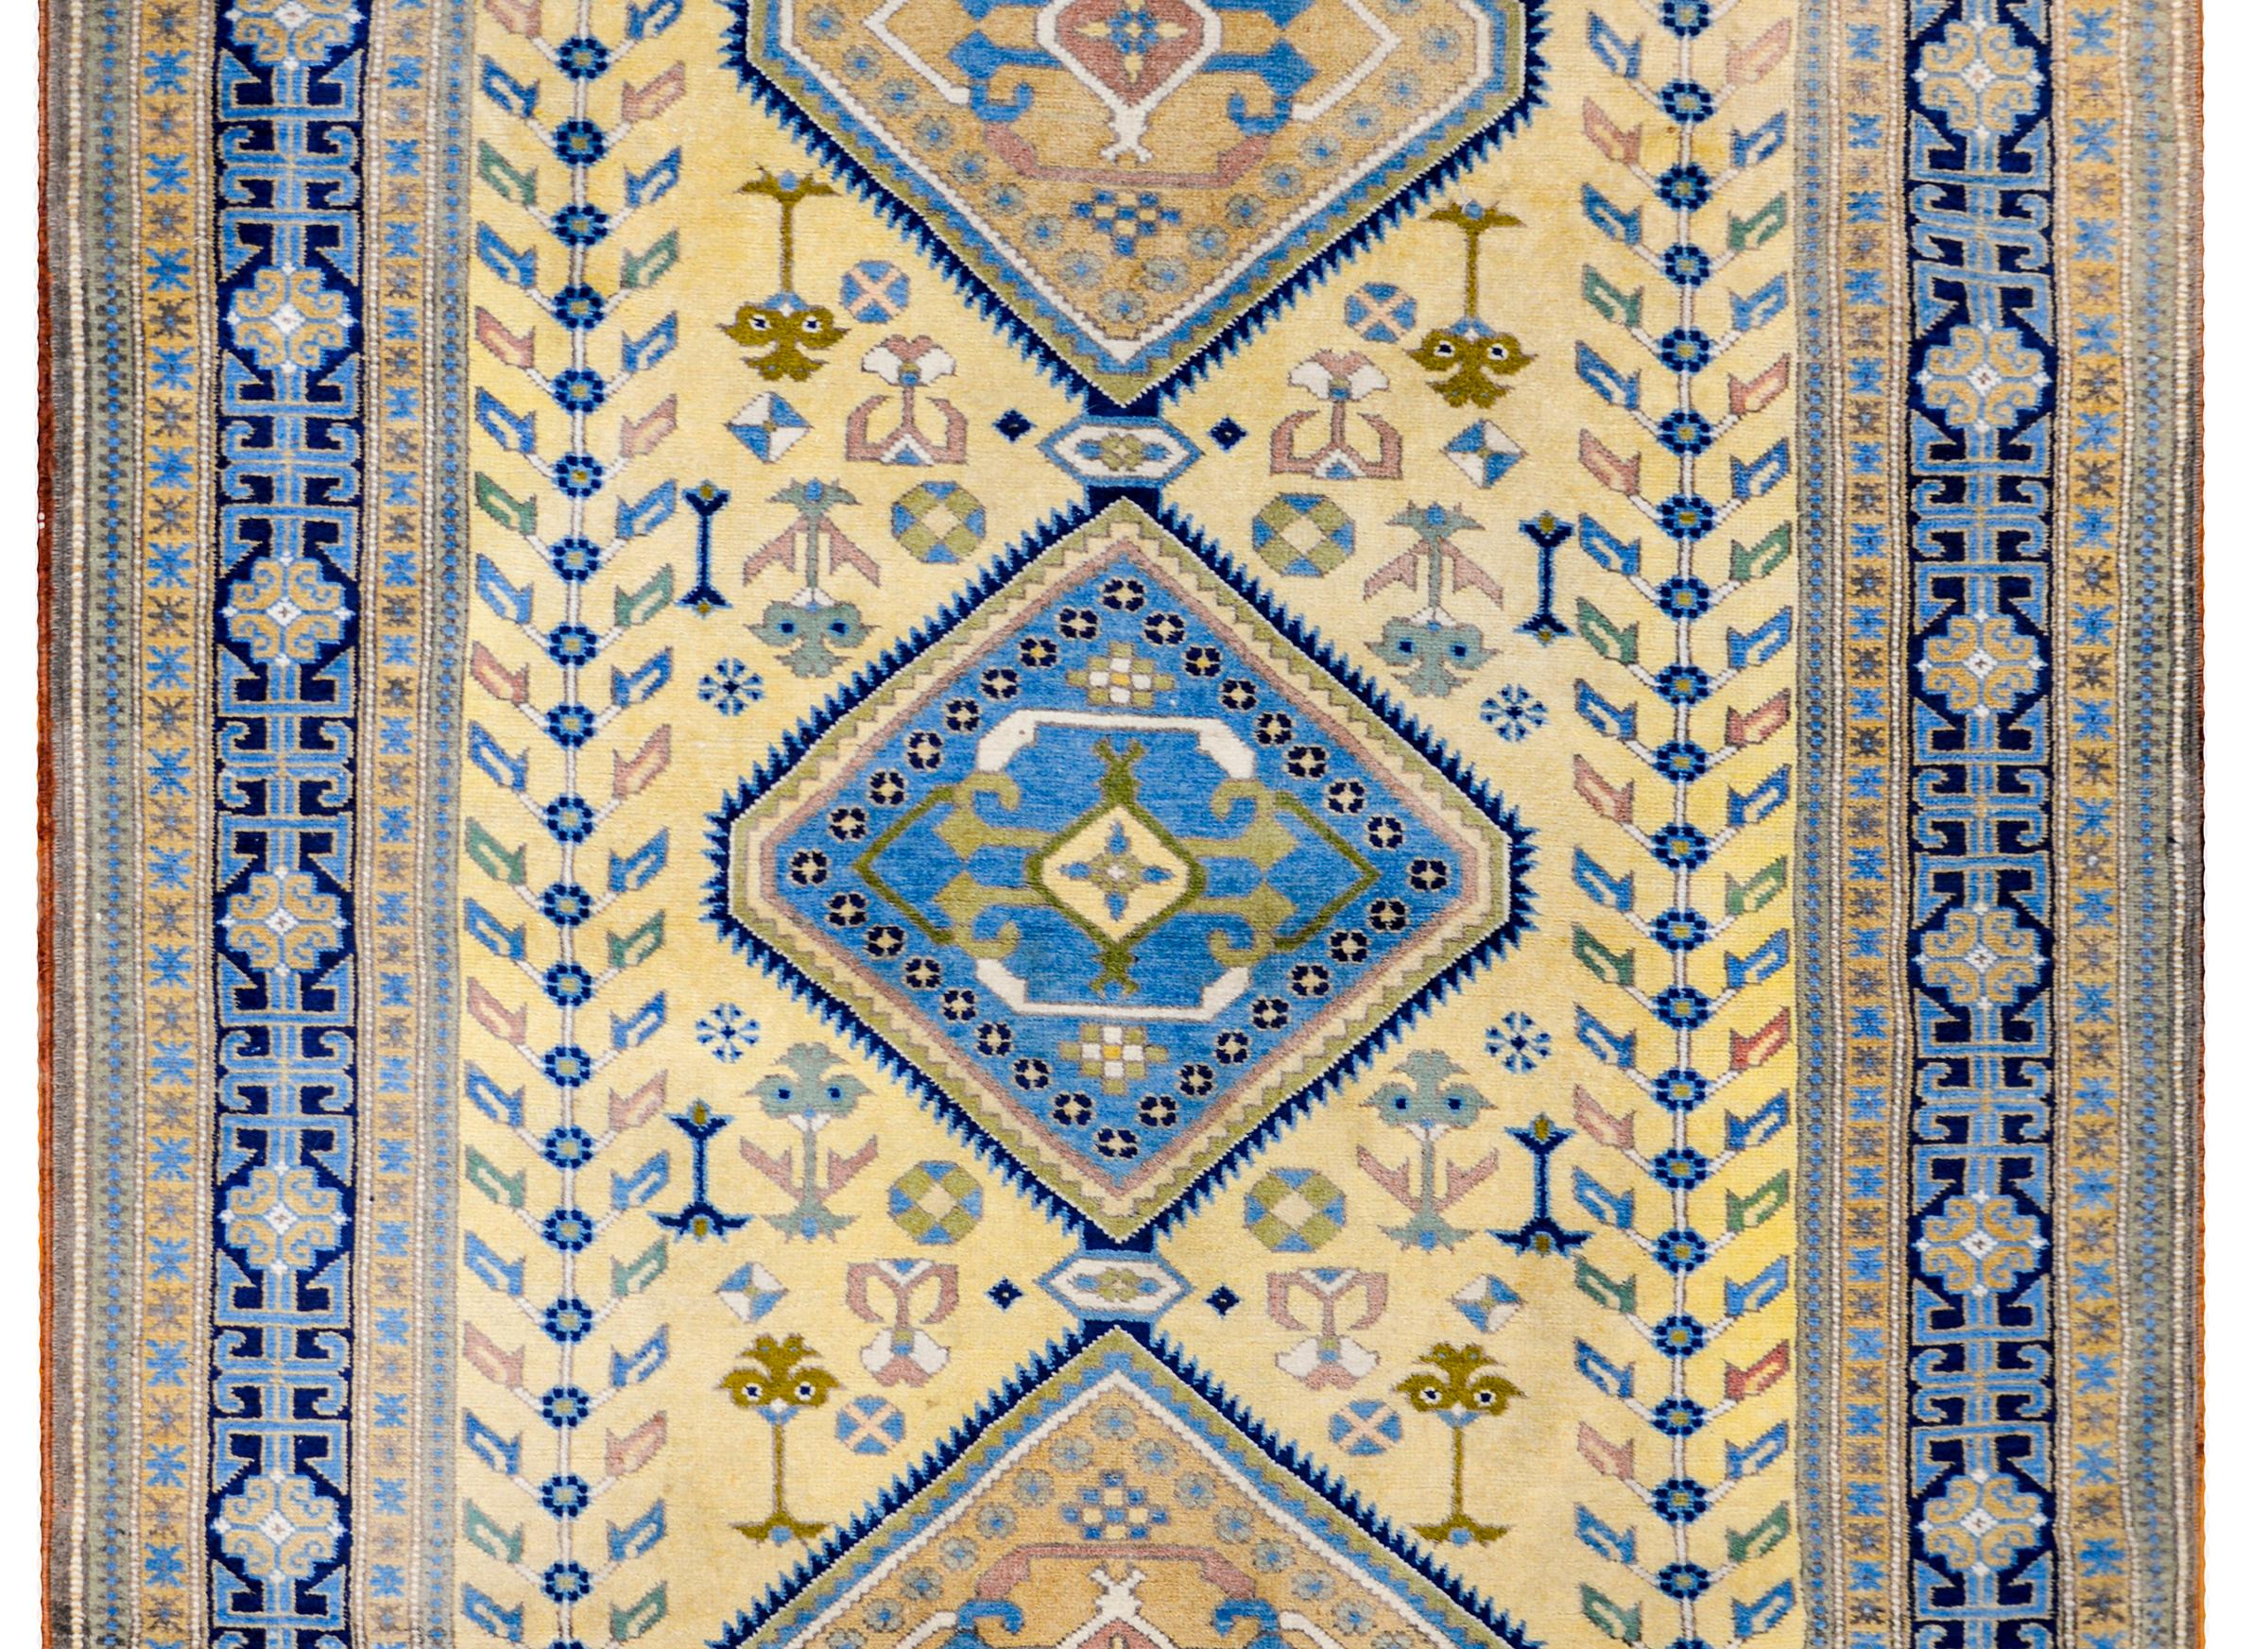 Tapis afghan kazakh de la fin du XXe siècle au design audacieux, avec trois grands médaillons centraux en forme de diamant sur un champ jaune pâle de fleurs stylisées et de grands arbres de vie flanqués de chaque côté. La bordure est magnifique avec